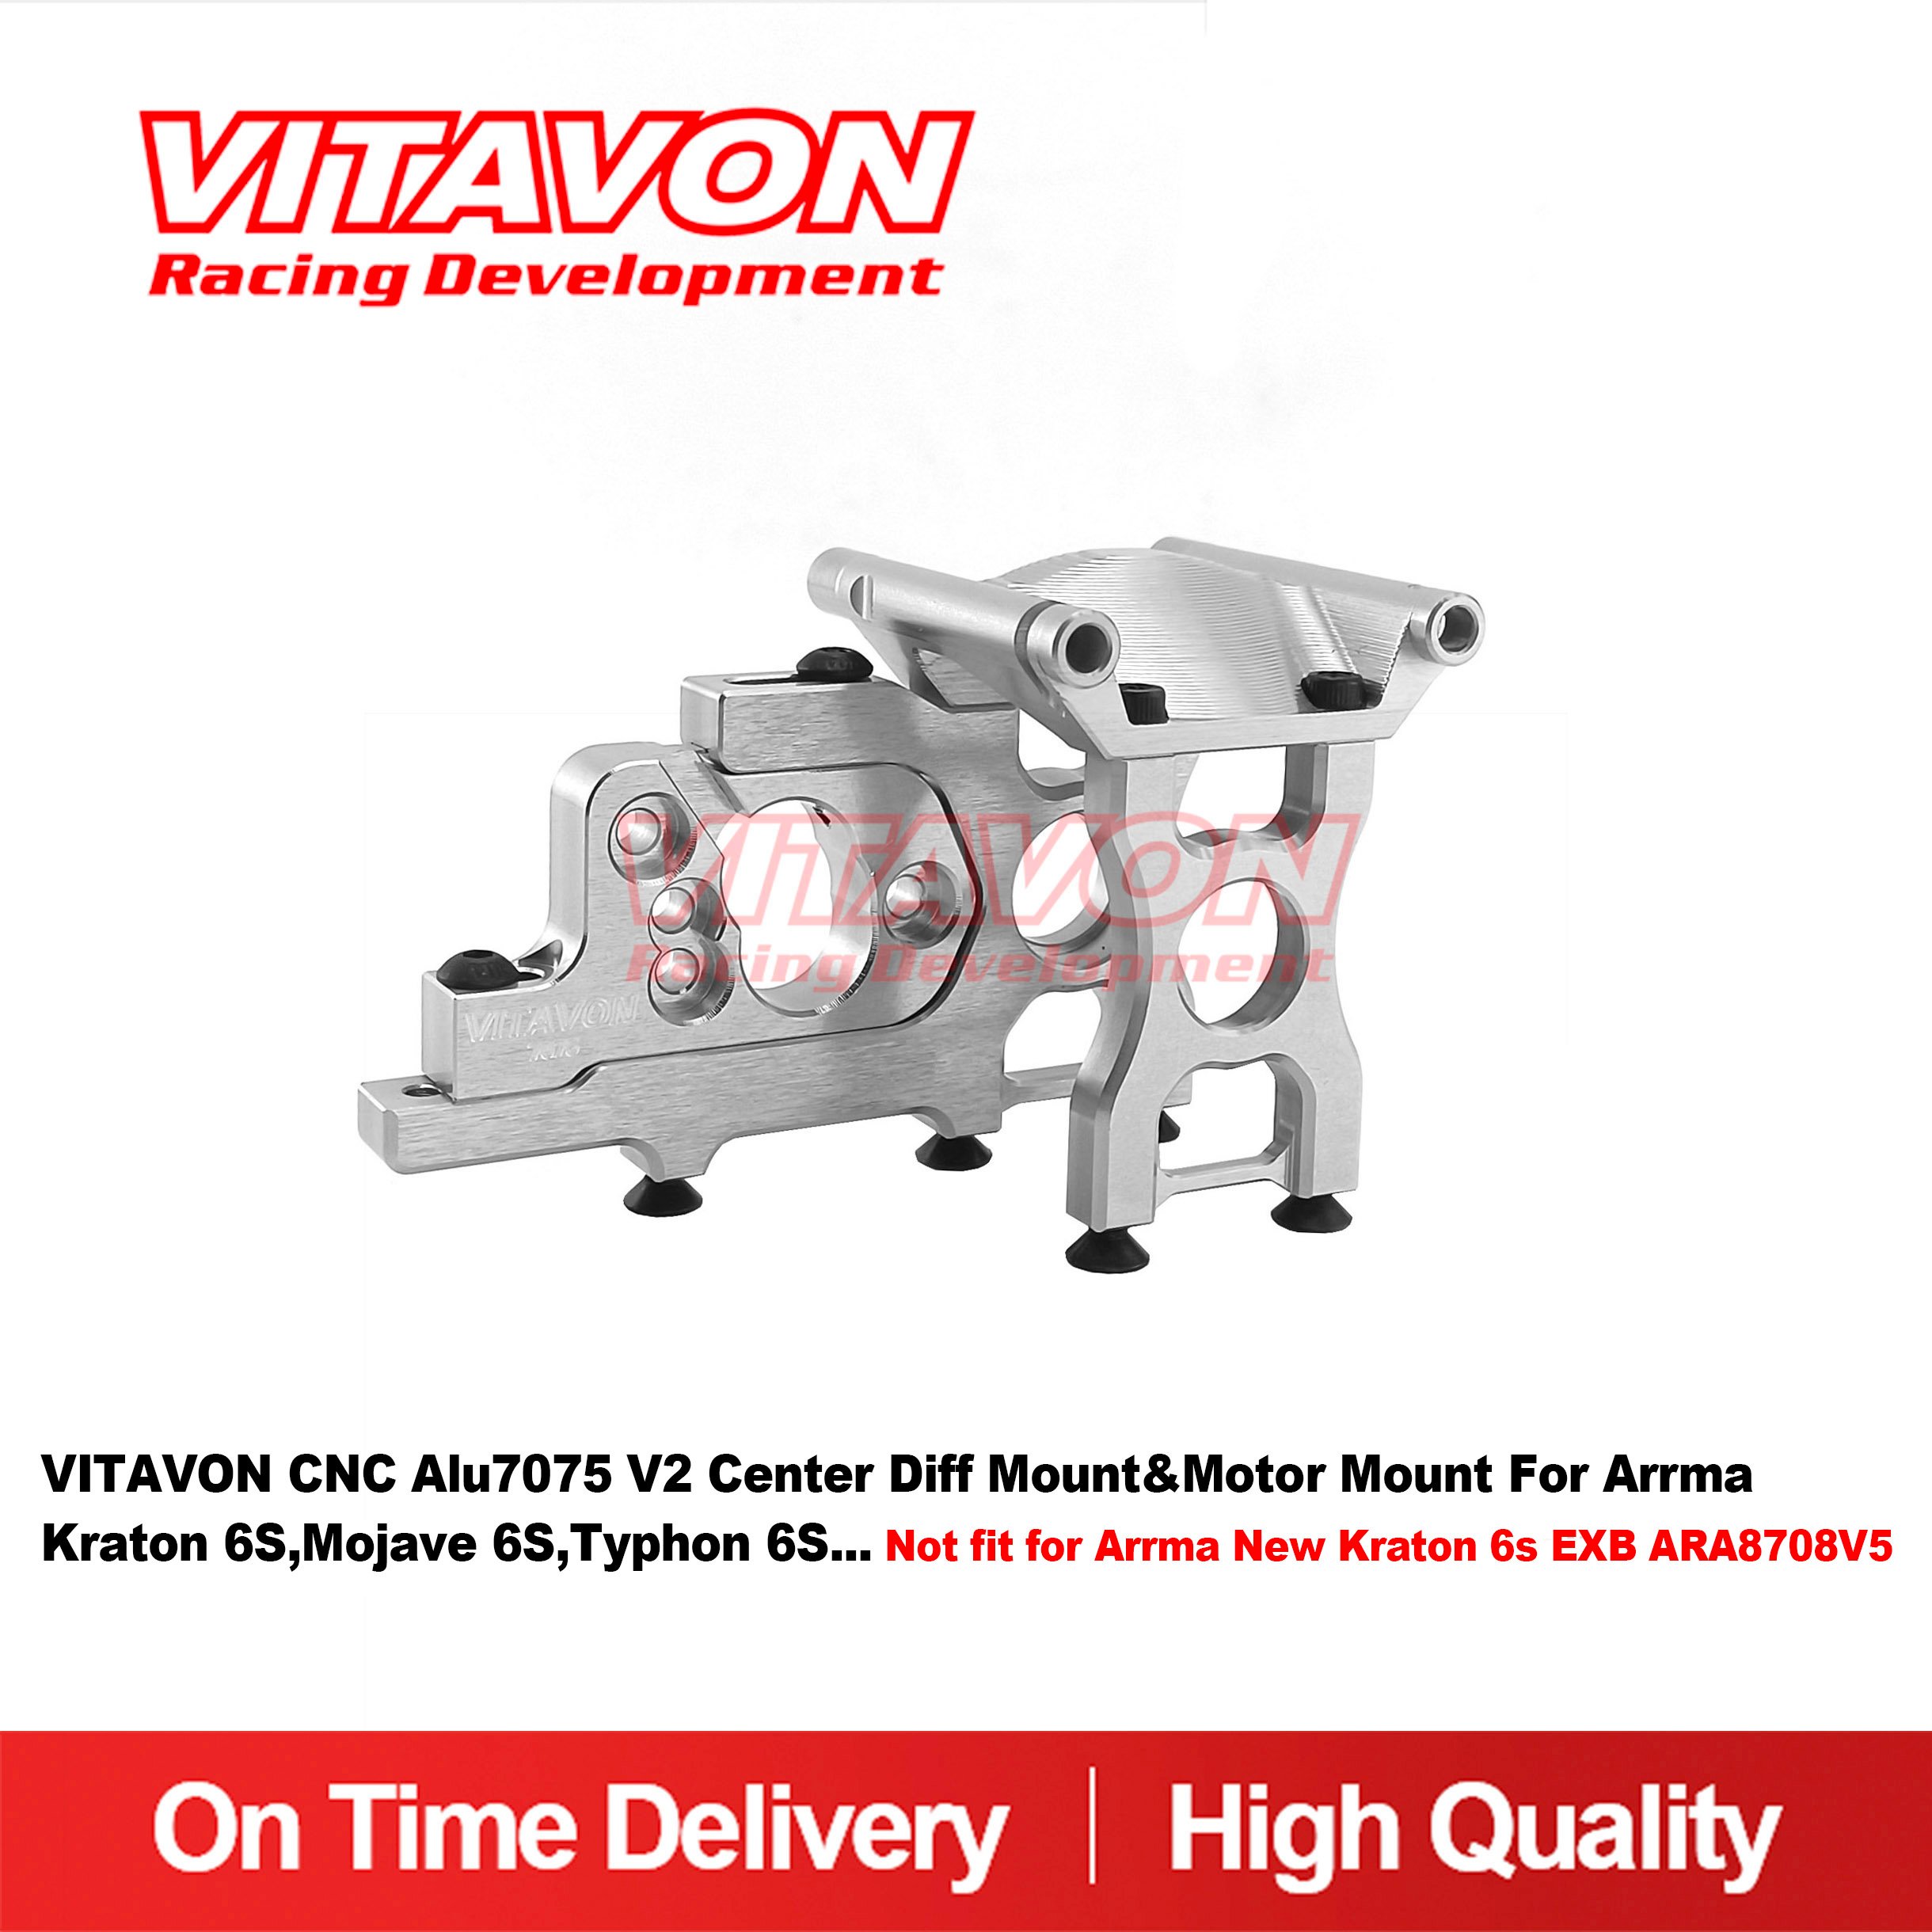 VITAVON CNC Alu7075 V2 Center Diff Mount&Motor Mount For All Arrma 6S,Not fit for Arrma New Kraton 6s EXB ARA8708V5